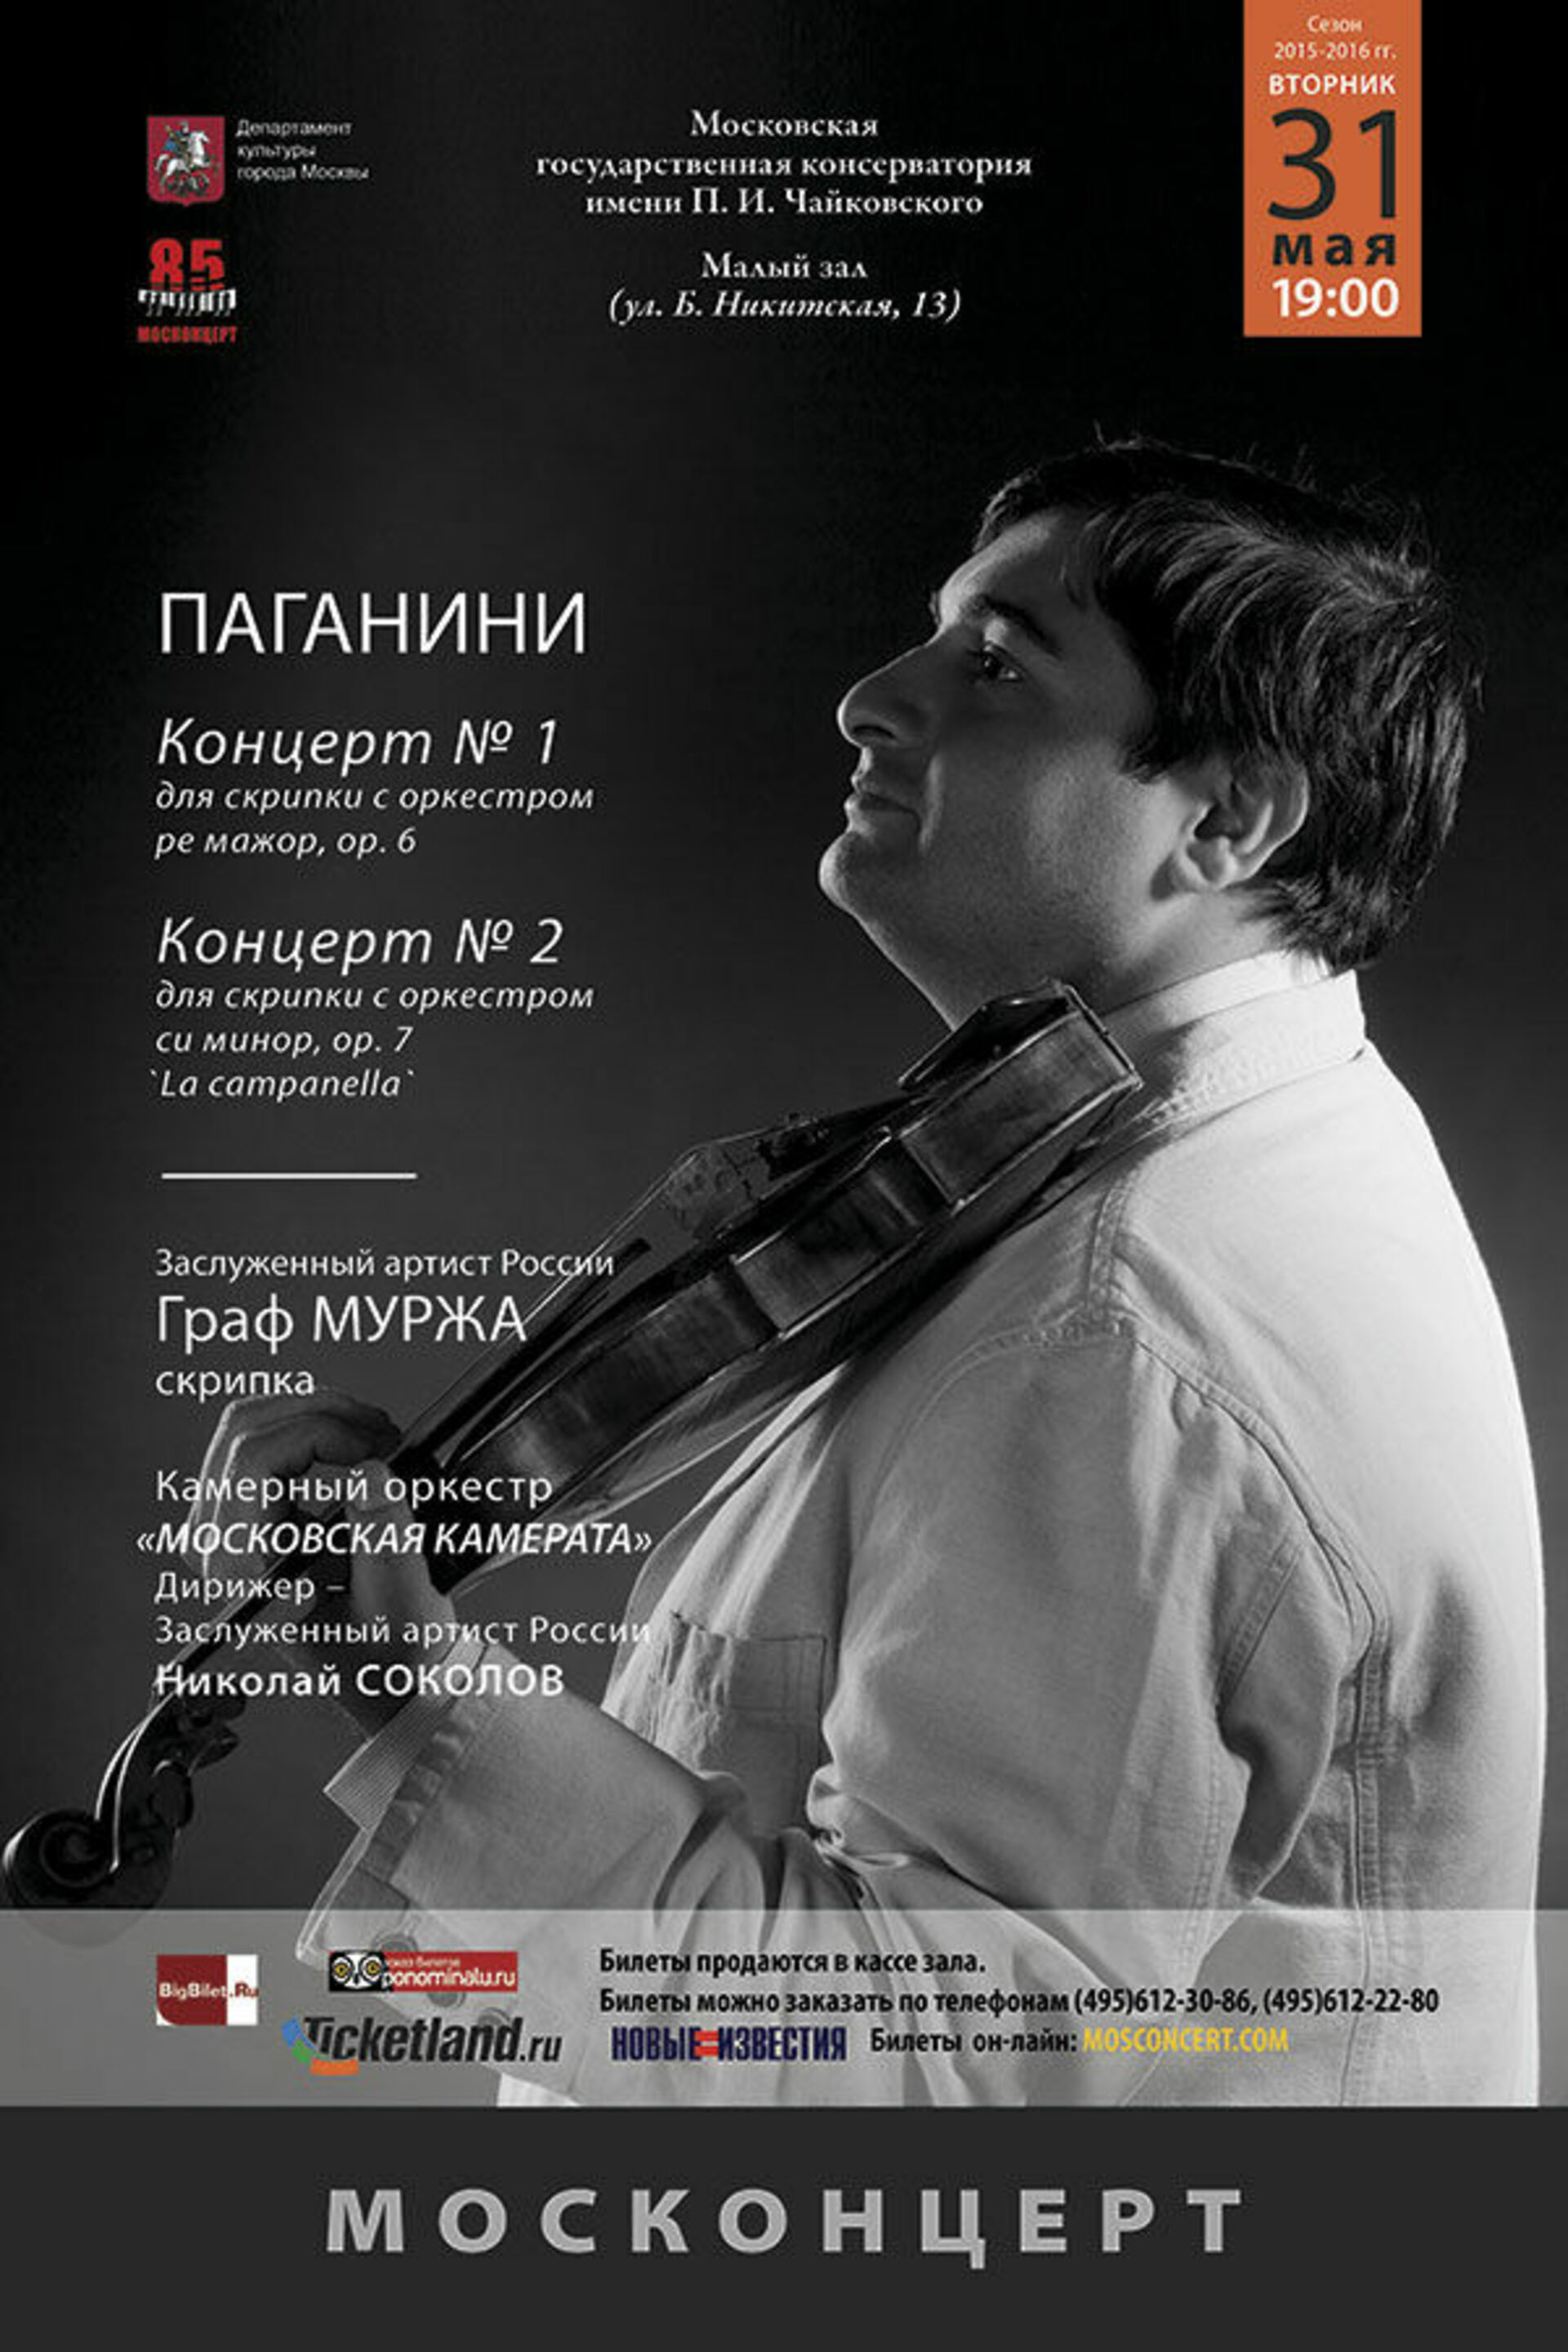 Концерт для паганини с оркестром. Камерный оркестр «Московская камерата». Паганини концерт для скрипки с оркестром.